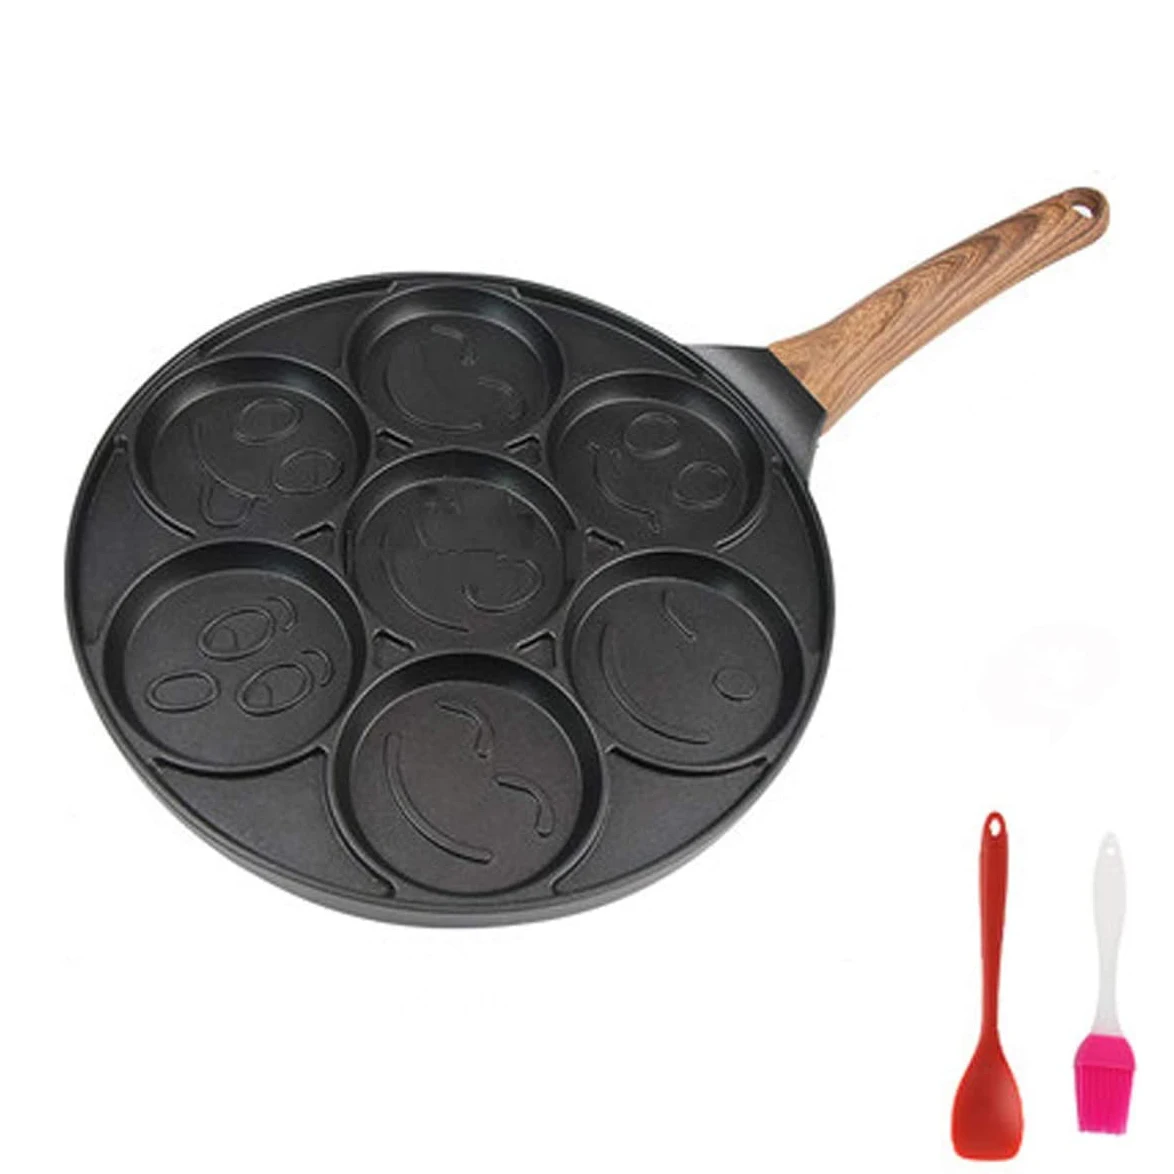 Smiley Face Pancake Pan - Non-stick Pan Cake Griddle With 7 Unique Flapjack Faces,3 Pcs Set